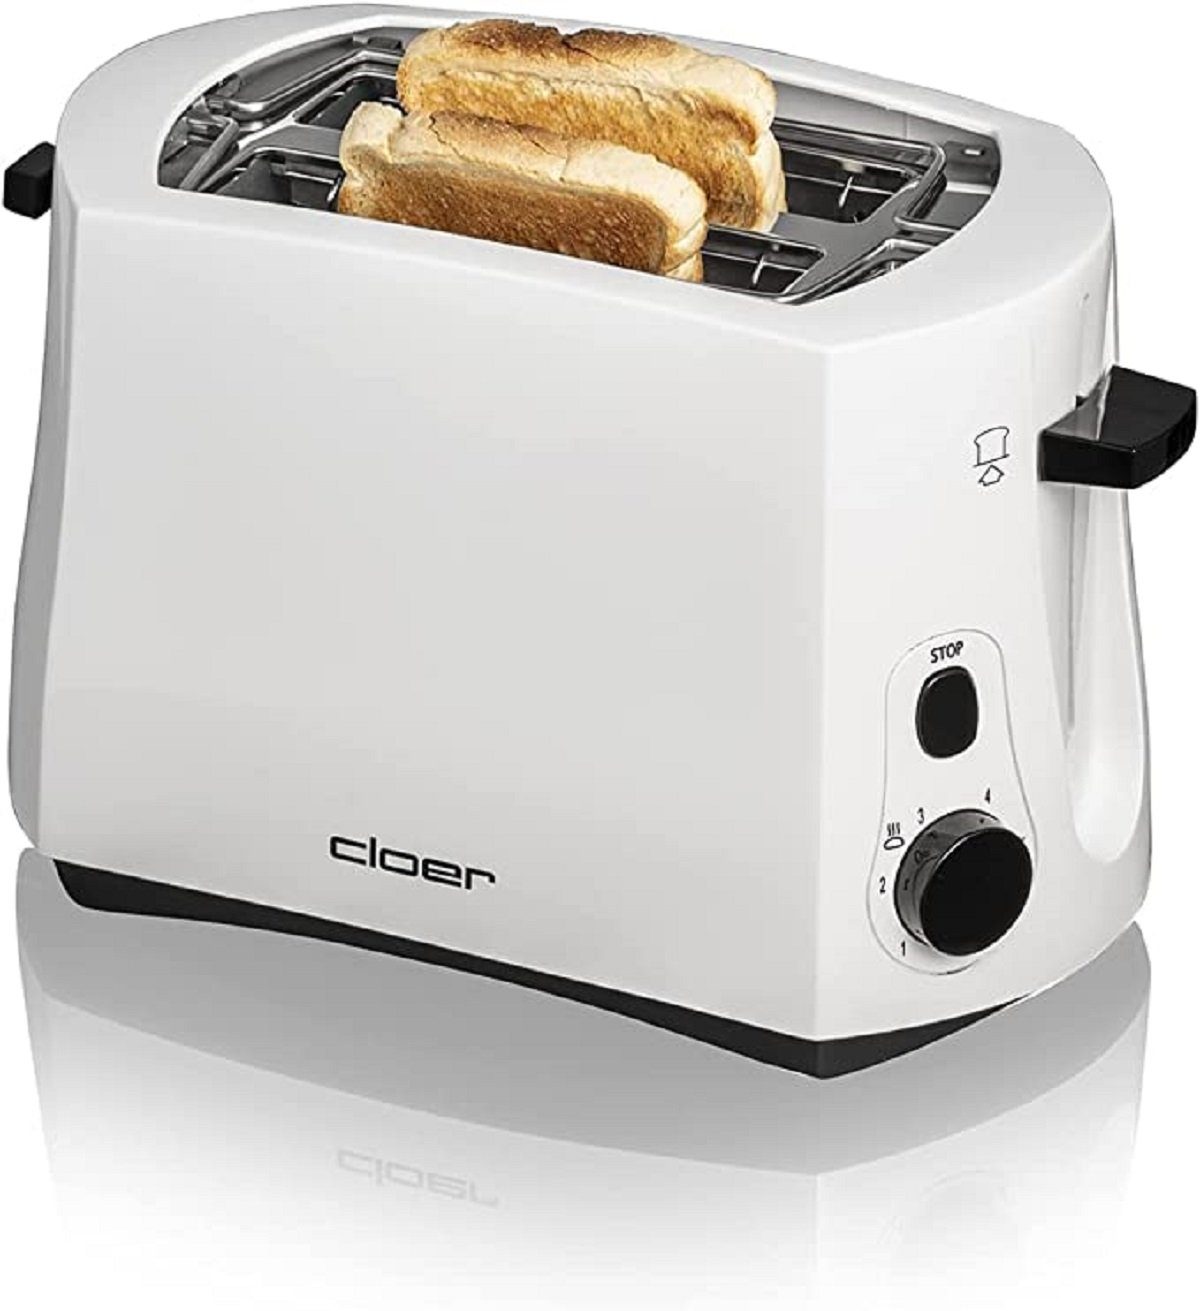 Cloer Wasserkocher Cloer, Toaster weiß für 2 Toasts